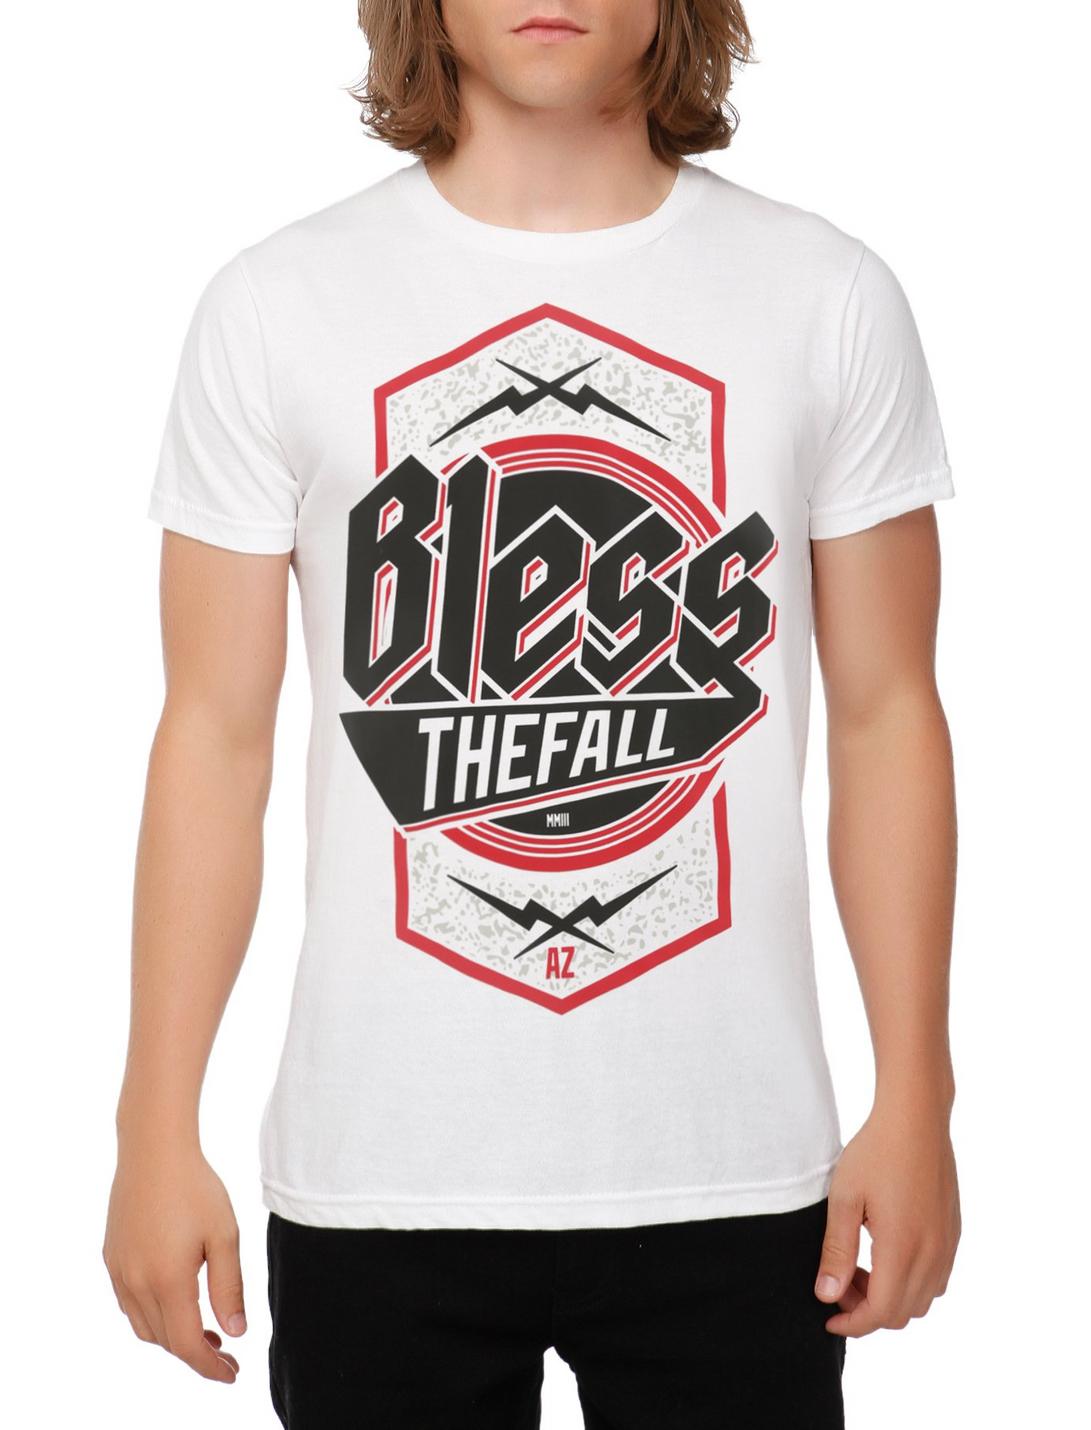 Blessthefall AZ T-Shirt, BLACK, hi-res